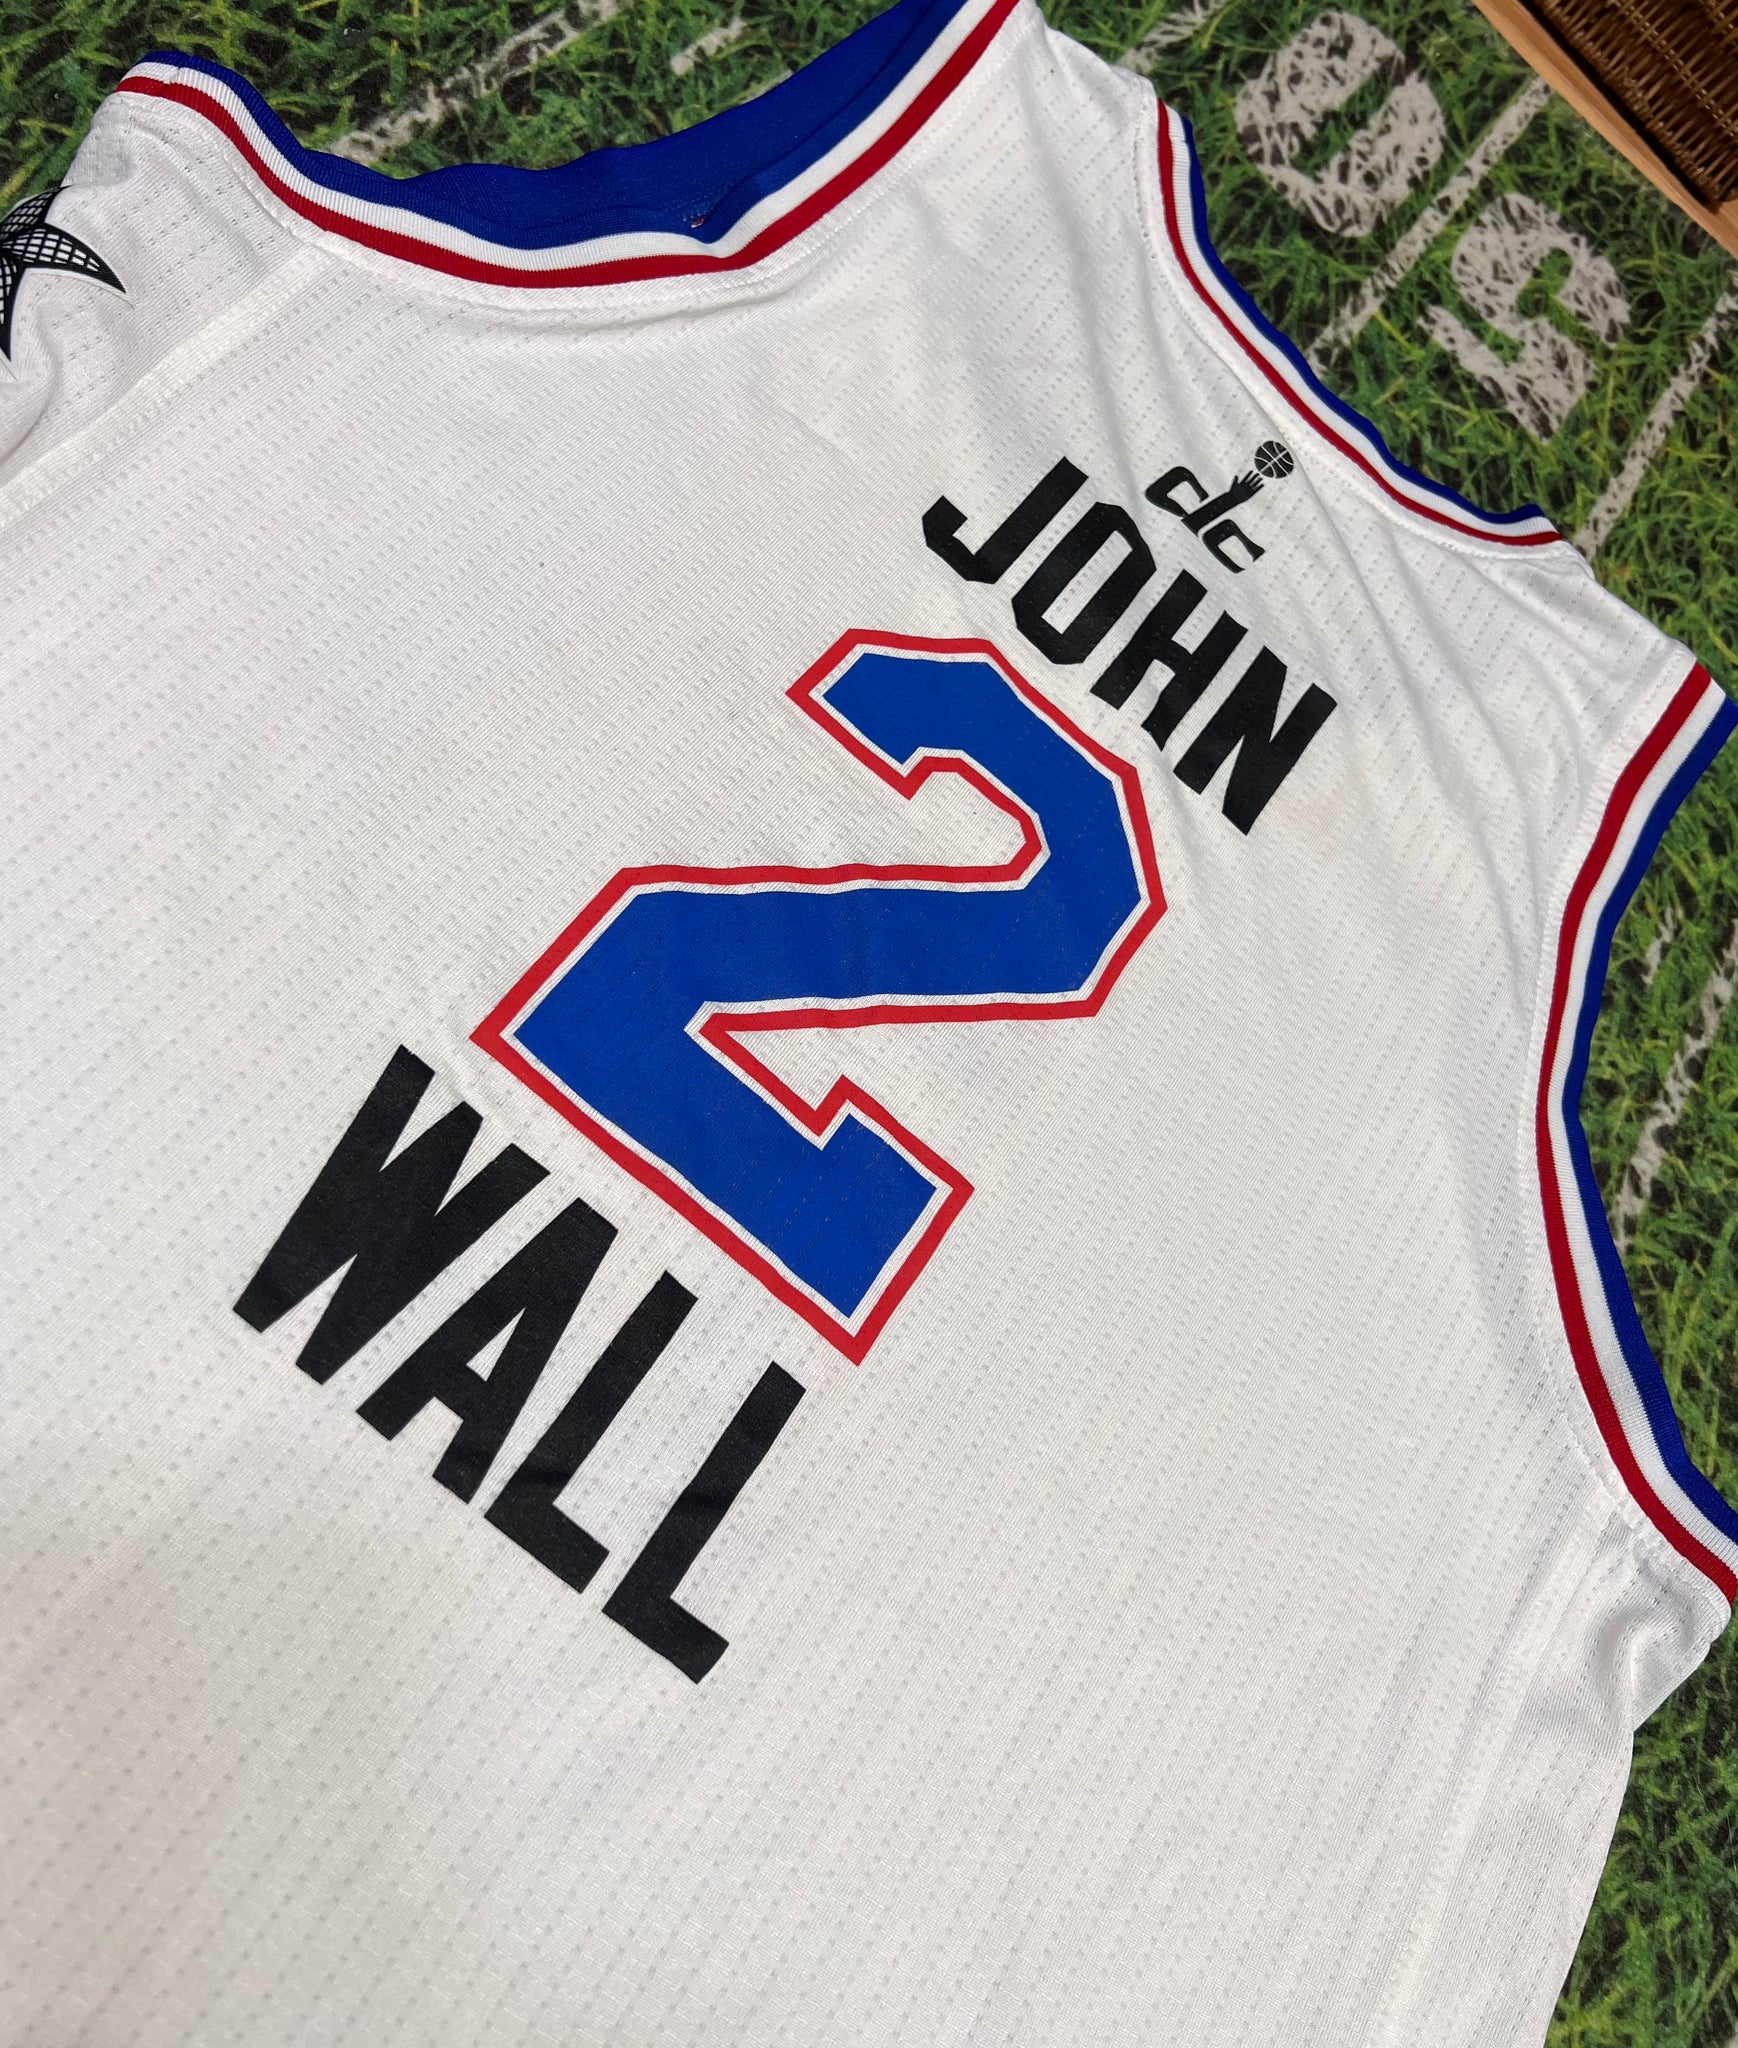 John Wall 2015 NBA All Star Game Jersey Adidas Washington Wizards Bask –  Rare_Wear_Attire